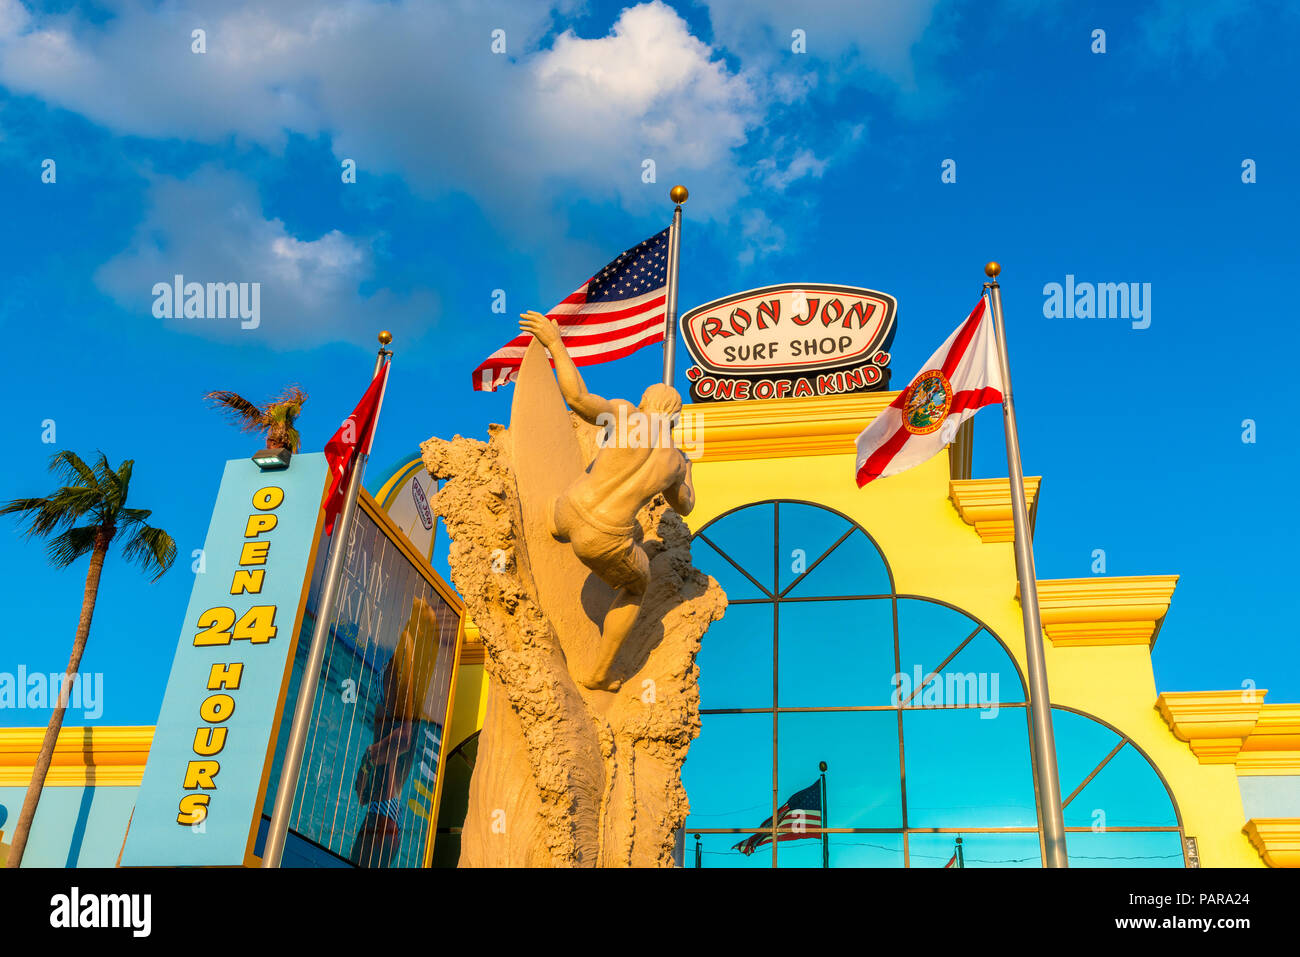 Ron Jon Surf Shop en Cocoa Beach, Florida, Estados Unidos. Ron Jon Surf Shop es una cadena de tiendas de estilo surfero fundada en 1959. Foto de stock